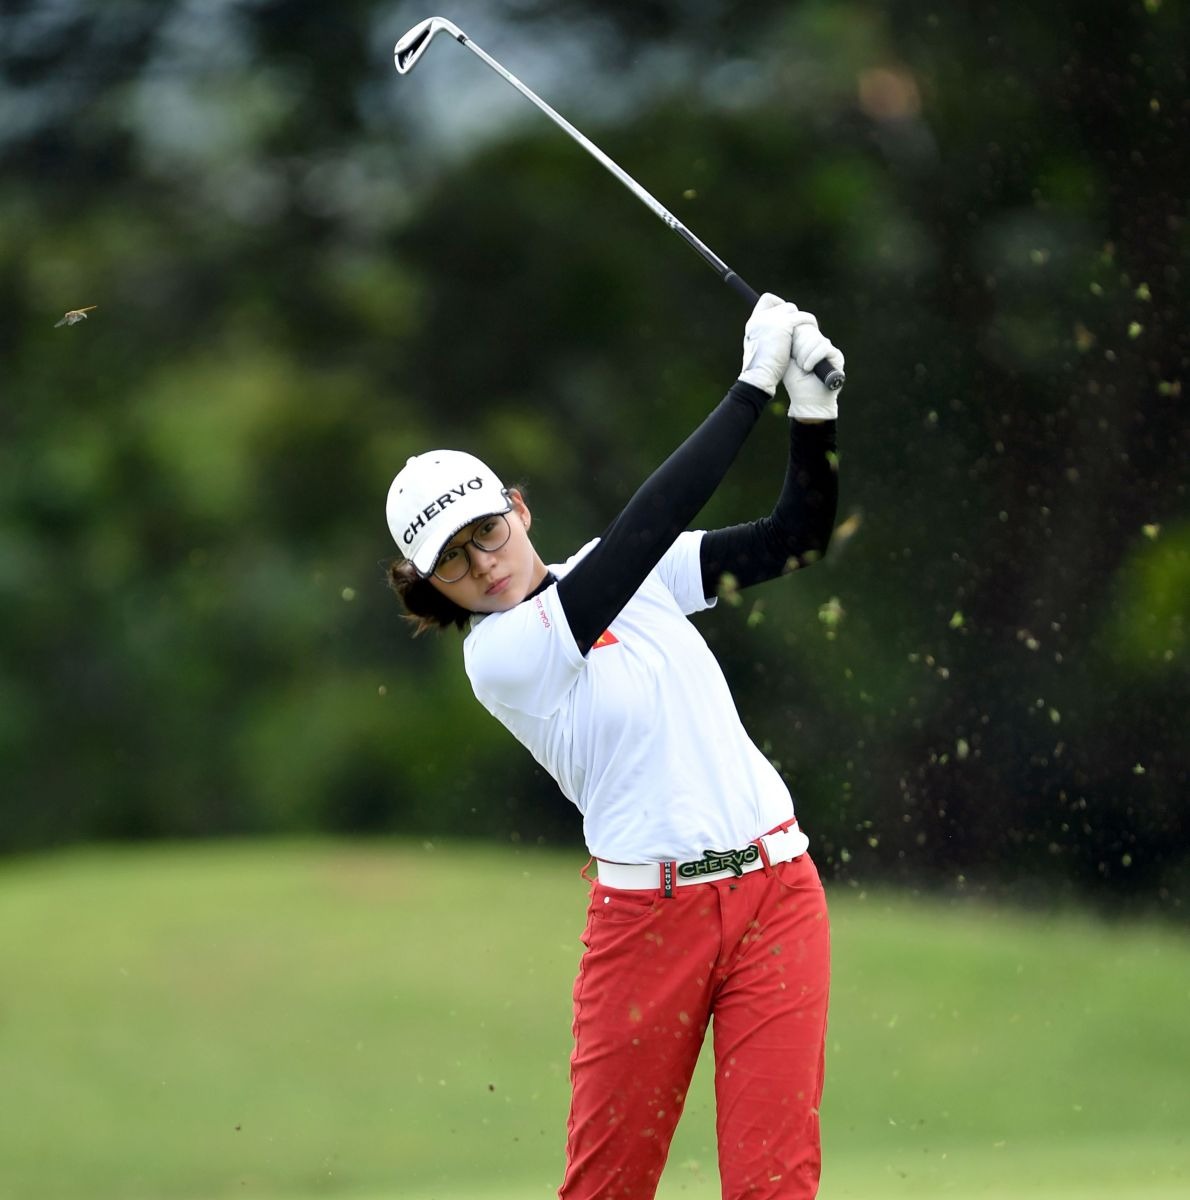 Ngọc nữ 19 tuổi của làng golf Việt Nam: 10 tuổi học golf, 14 tuổi khoác áo tuyển thủ quốc gia dự SEA Games - Ảnh 2.